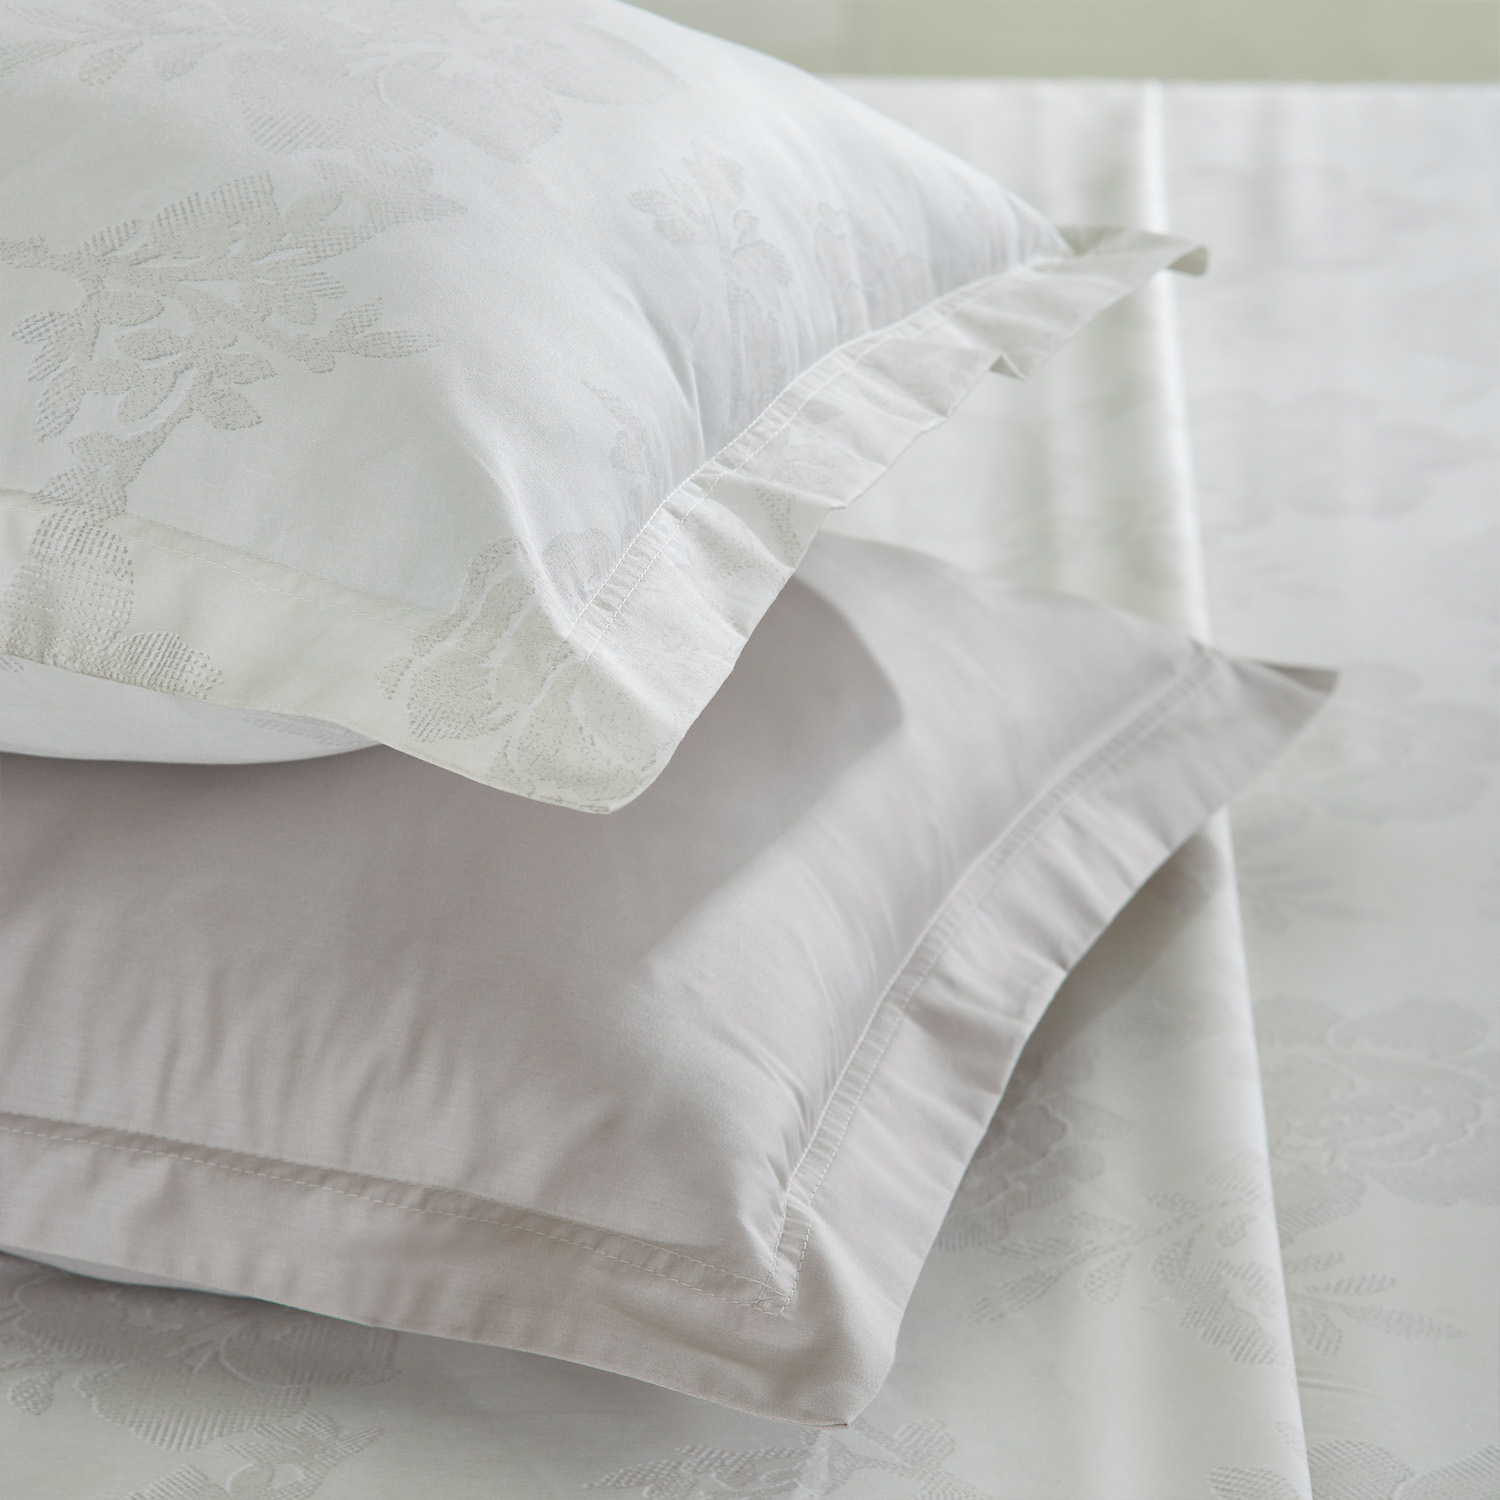 Dream in Desi Comfort: Exploring Bed Linen Online in India